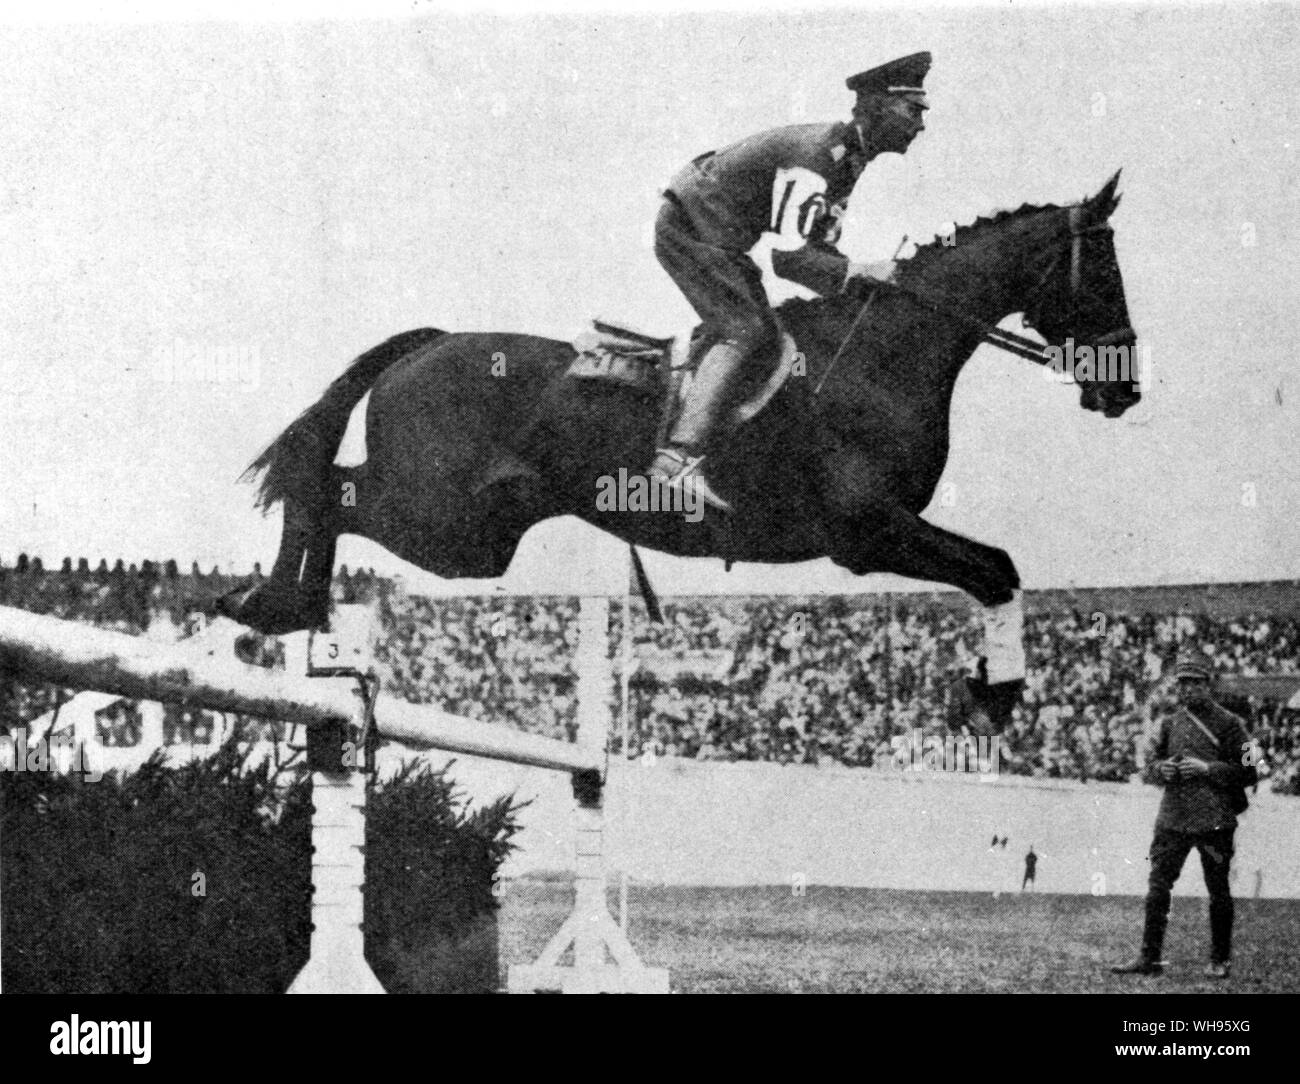 La compétition pour les épreuves équestres cso championnat B Neumann (Allemagne) sur Ilja troisième prix Amsterdam Jeux Olympiques 1928 Banque D'Images